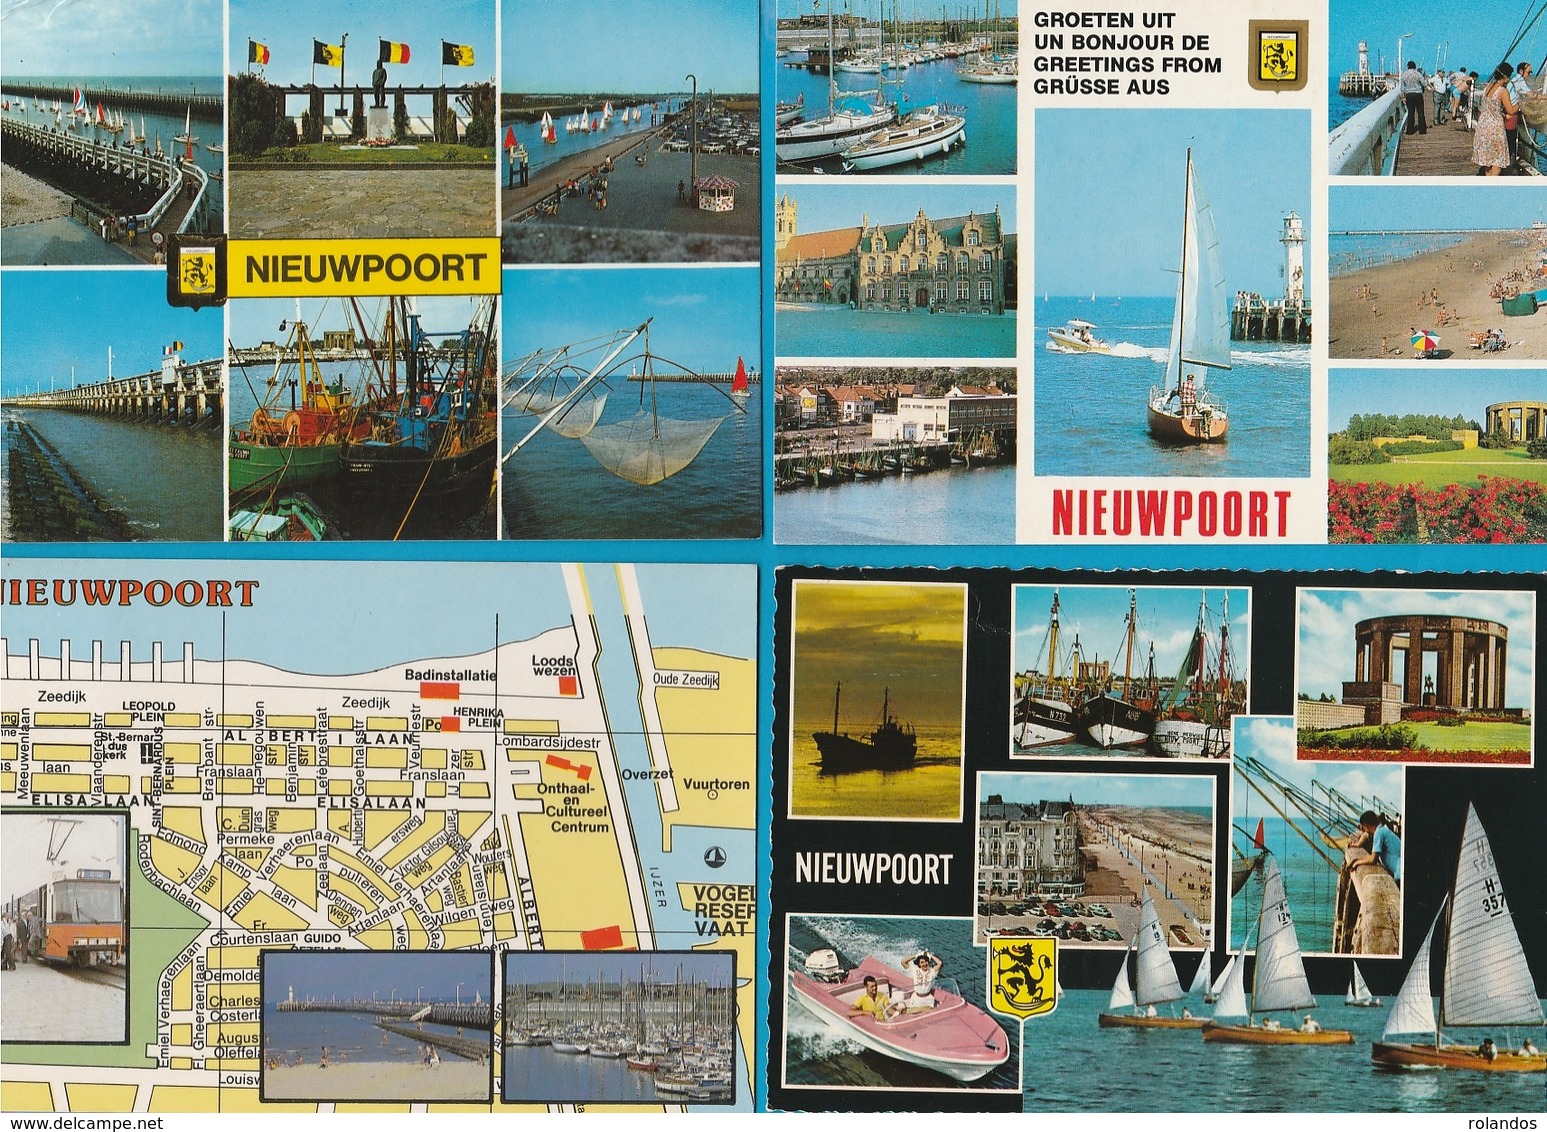 BELGIË Groeten uit, Bonjour de, Lot van 60 Postkaarten, Cartes Postales